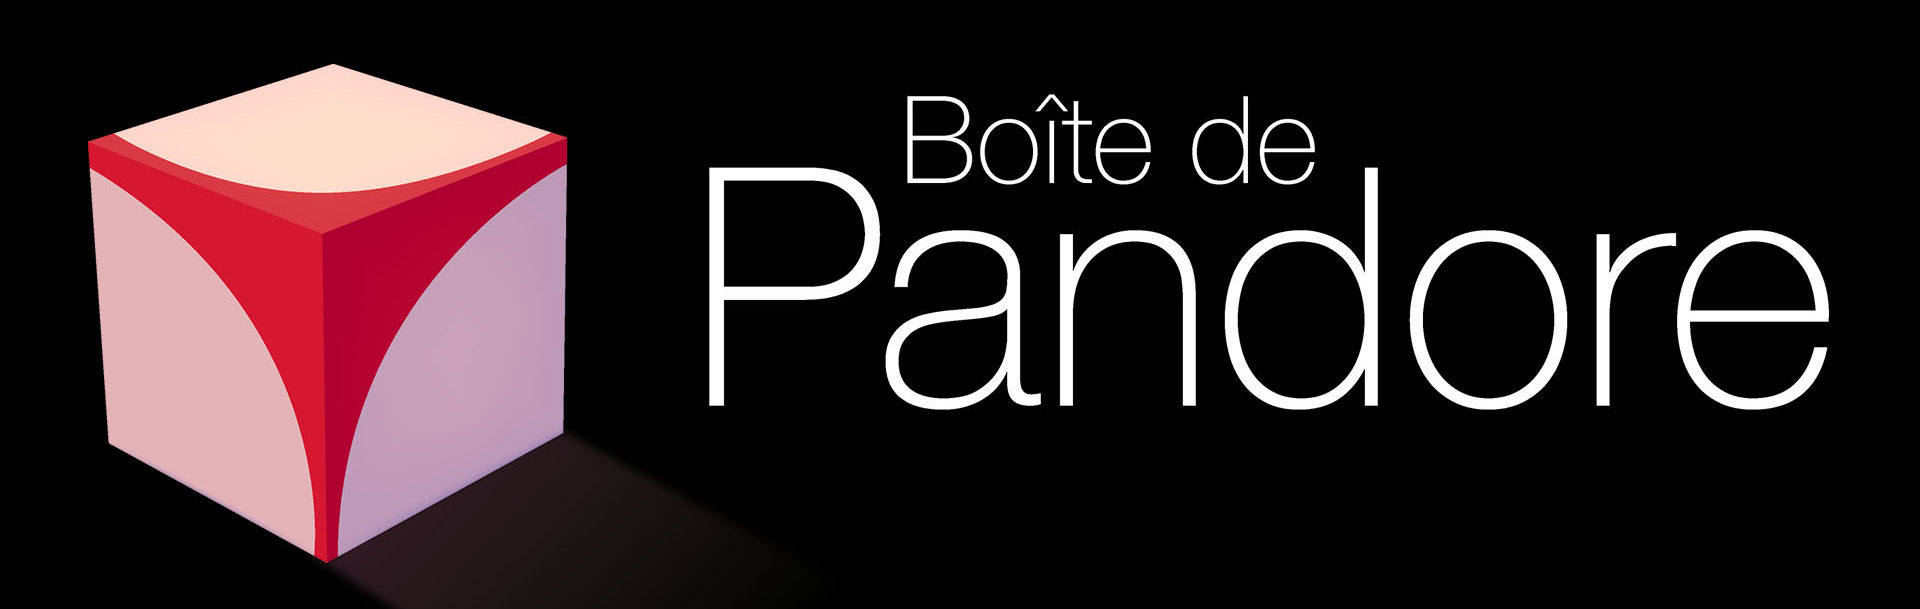 Logo Boite de Pandore - cube erotic logo